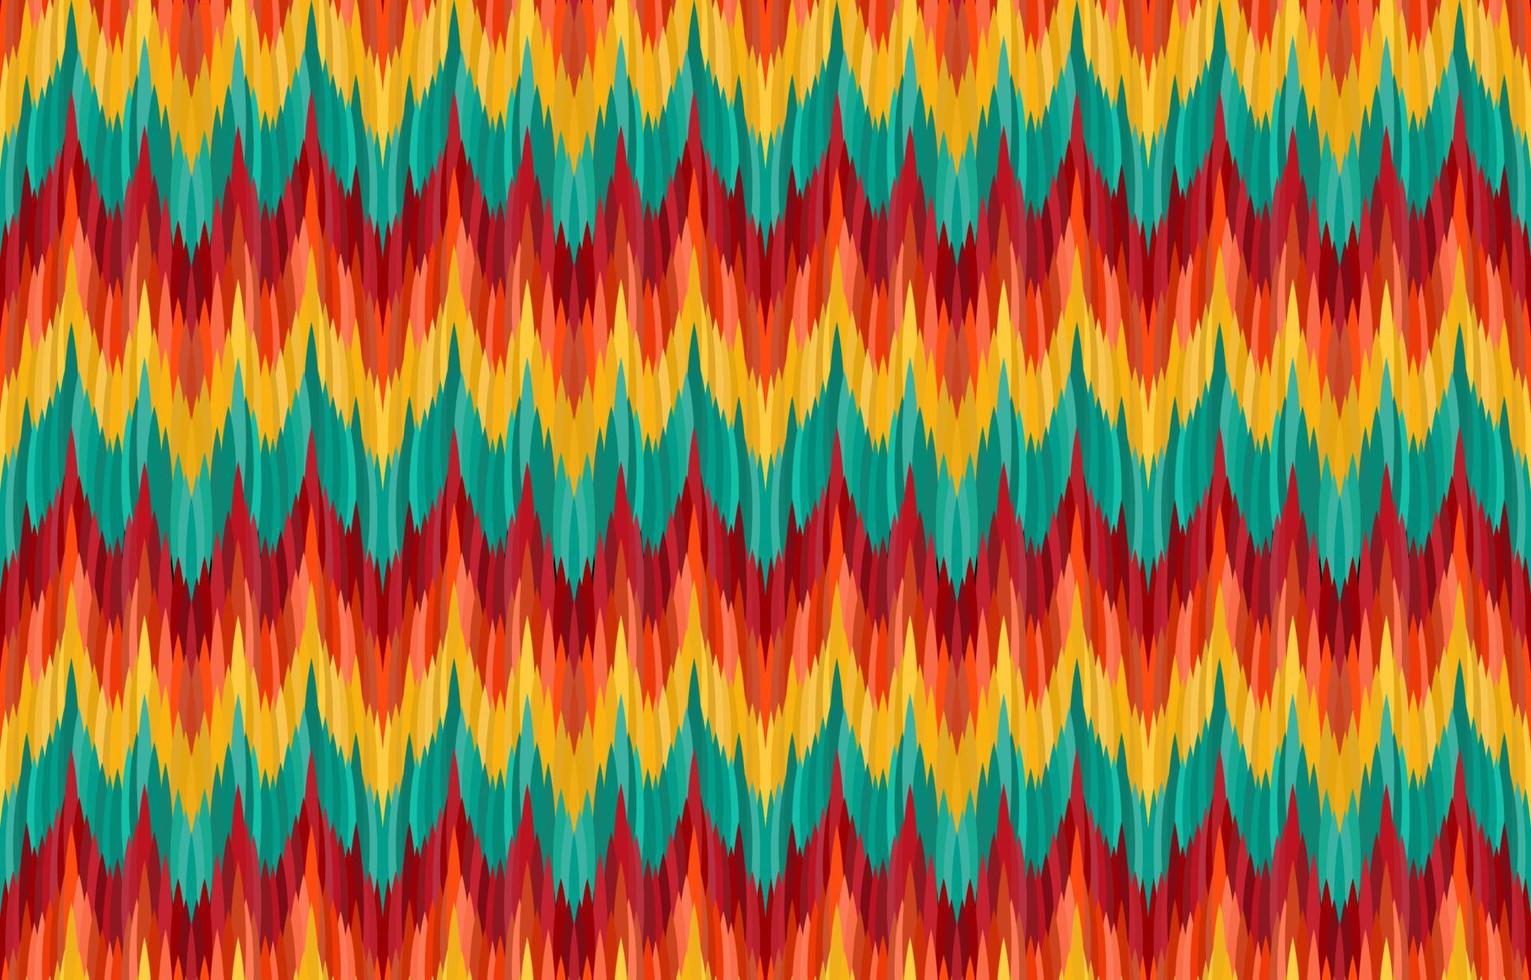 patrones de ikat en zigzag. estilo retro vintage tribal geométrico. tela étnica ikat de patrones sin fisuras. indio navajo azteca africano ikat imprimir vector. diseño para telón de fondo textura papel tapiz ropa textil. vector